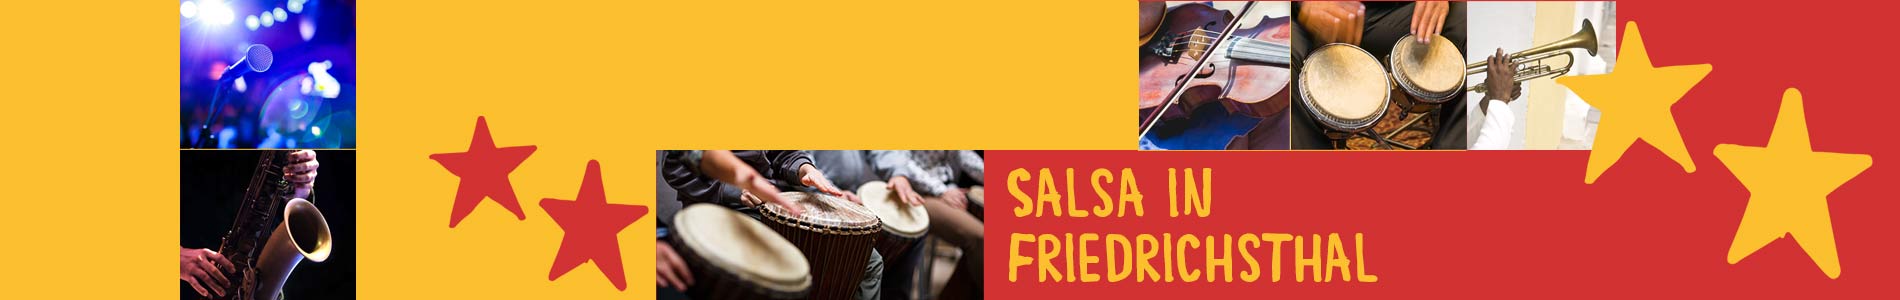 Salsa in Friedrichsthal – Salsa lernen und tanzen, Tanzkurse, Partys, Veranstaltungen